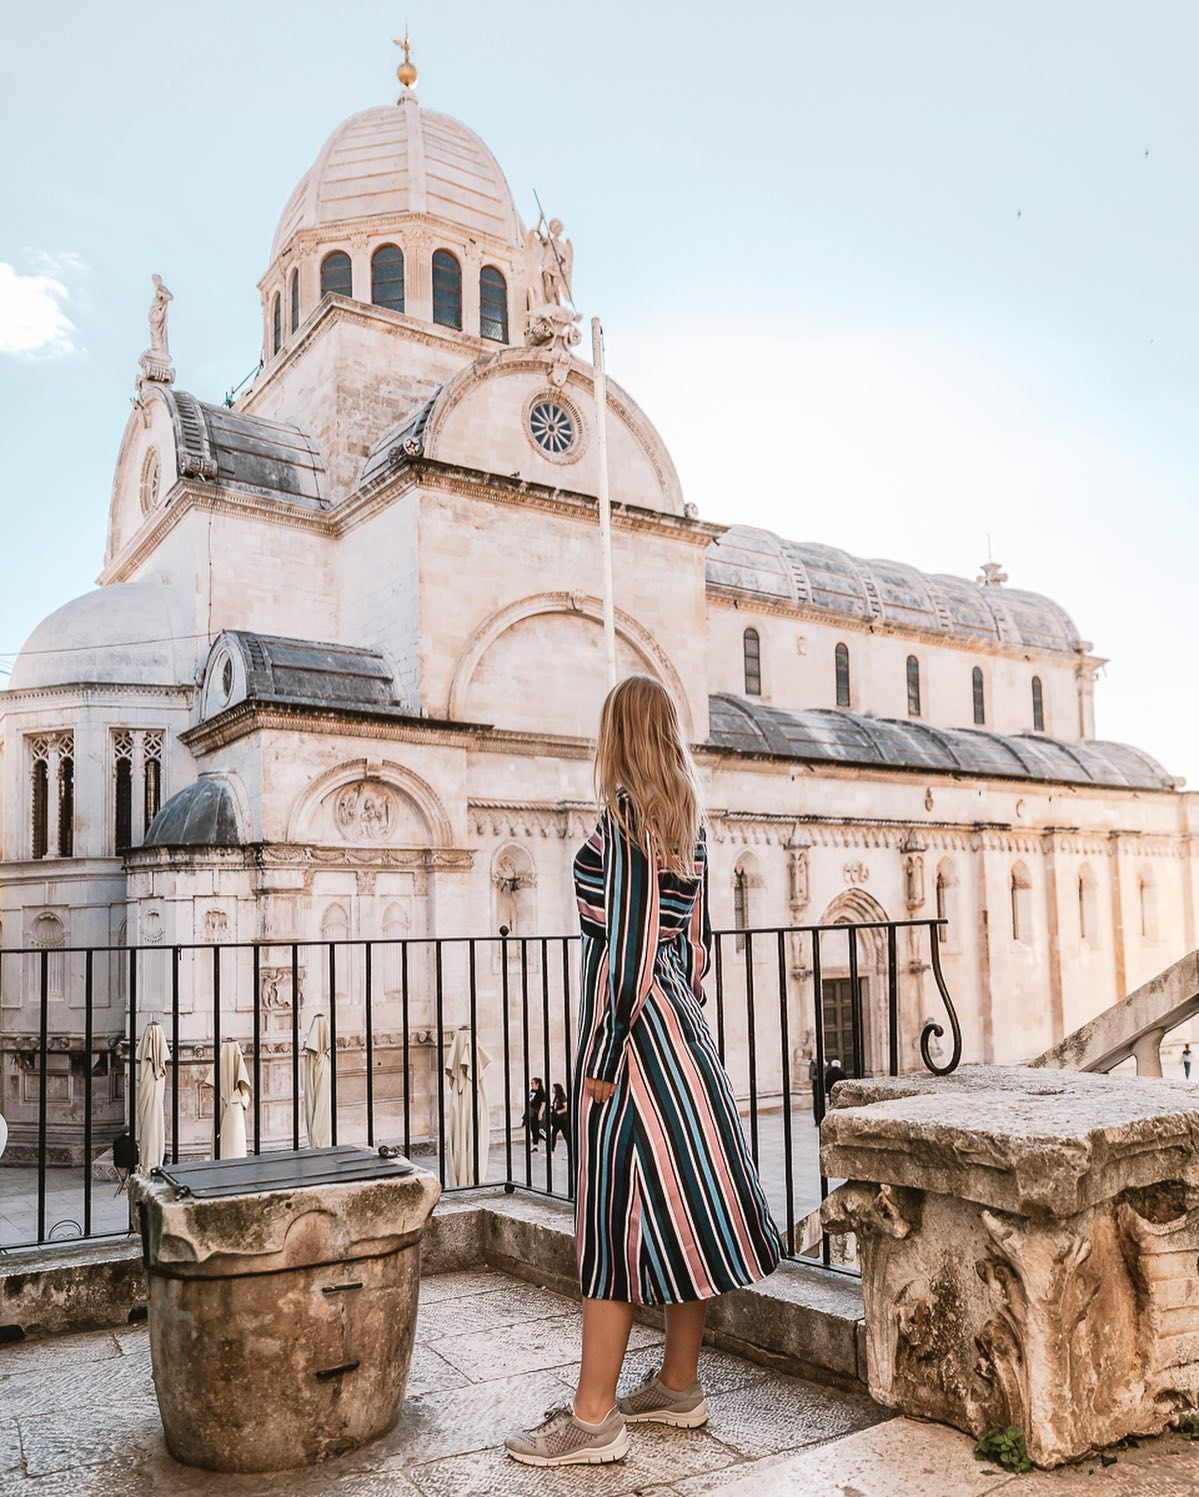 Katedra w Szybeniku to jedno z najbardziej instagramowych miejsc w Chorwacji